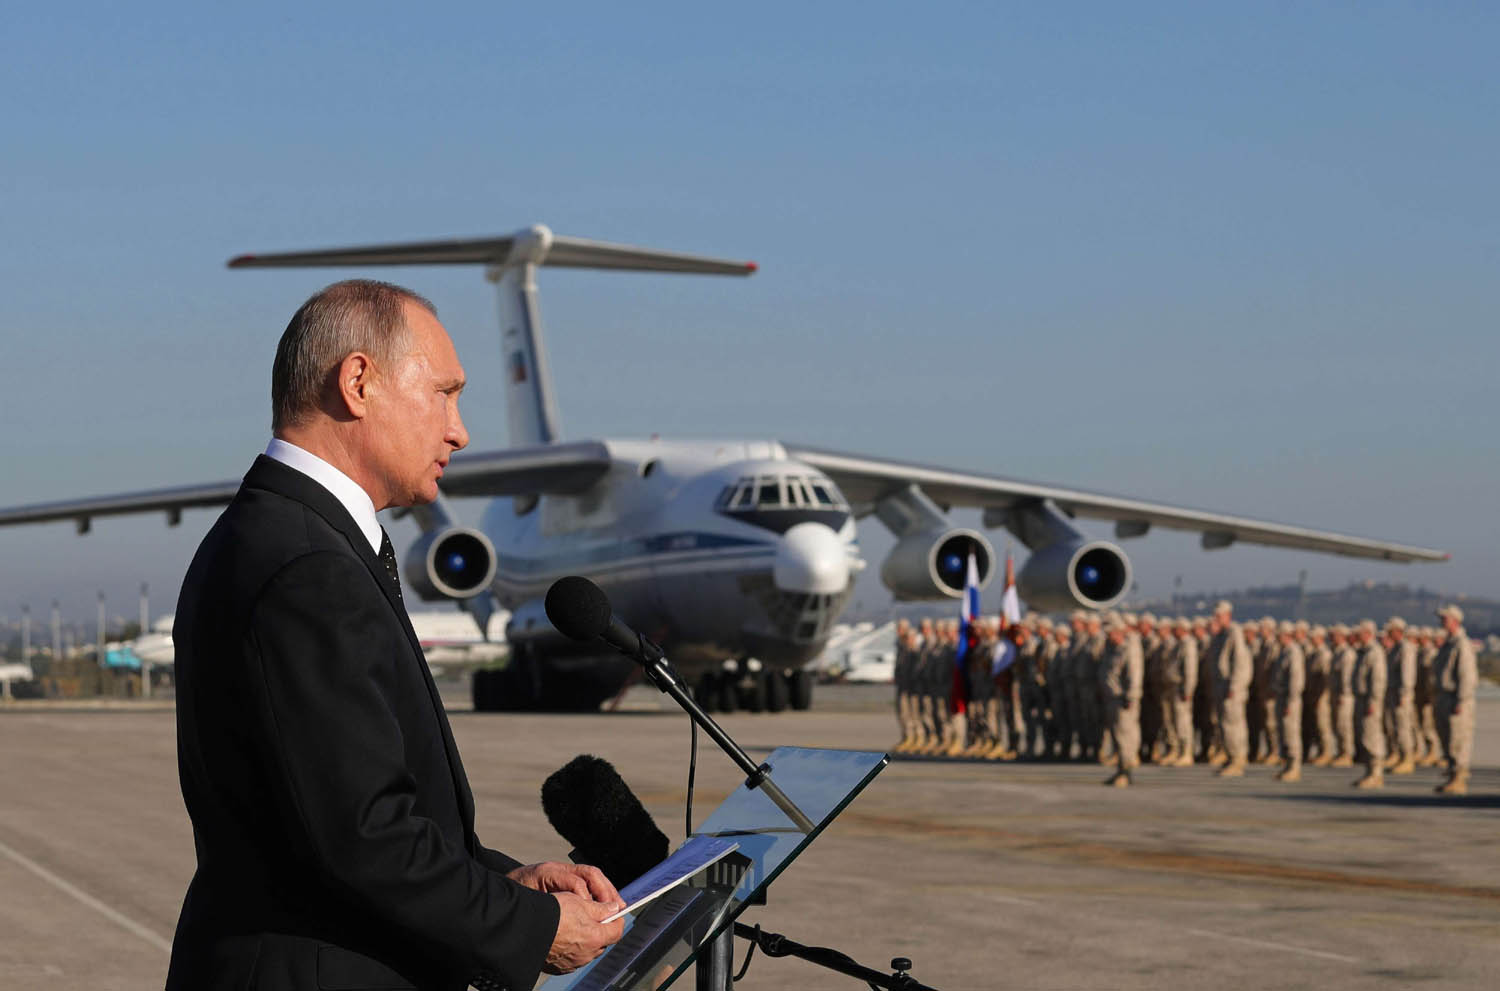 الرئيس الروسي فلاديمير بوتين يتحدث إلى جنود روس في قاعدة حميميم في سوريا